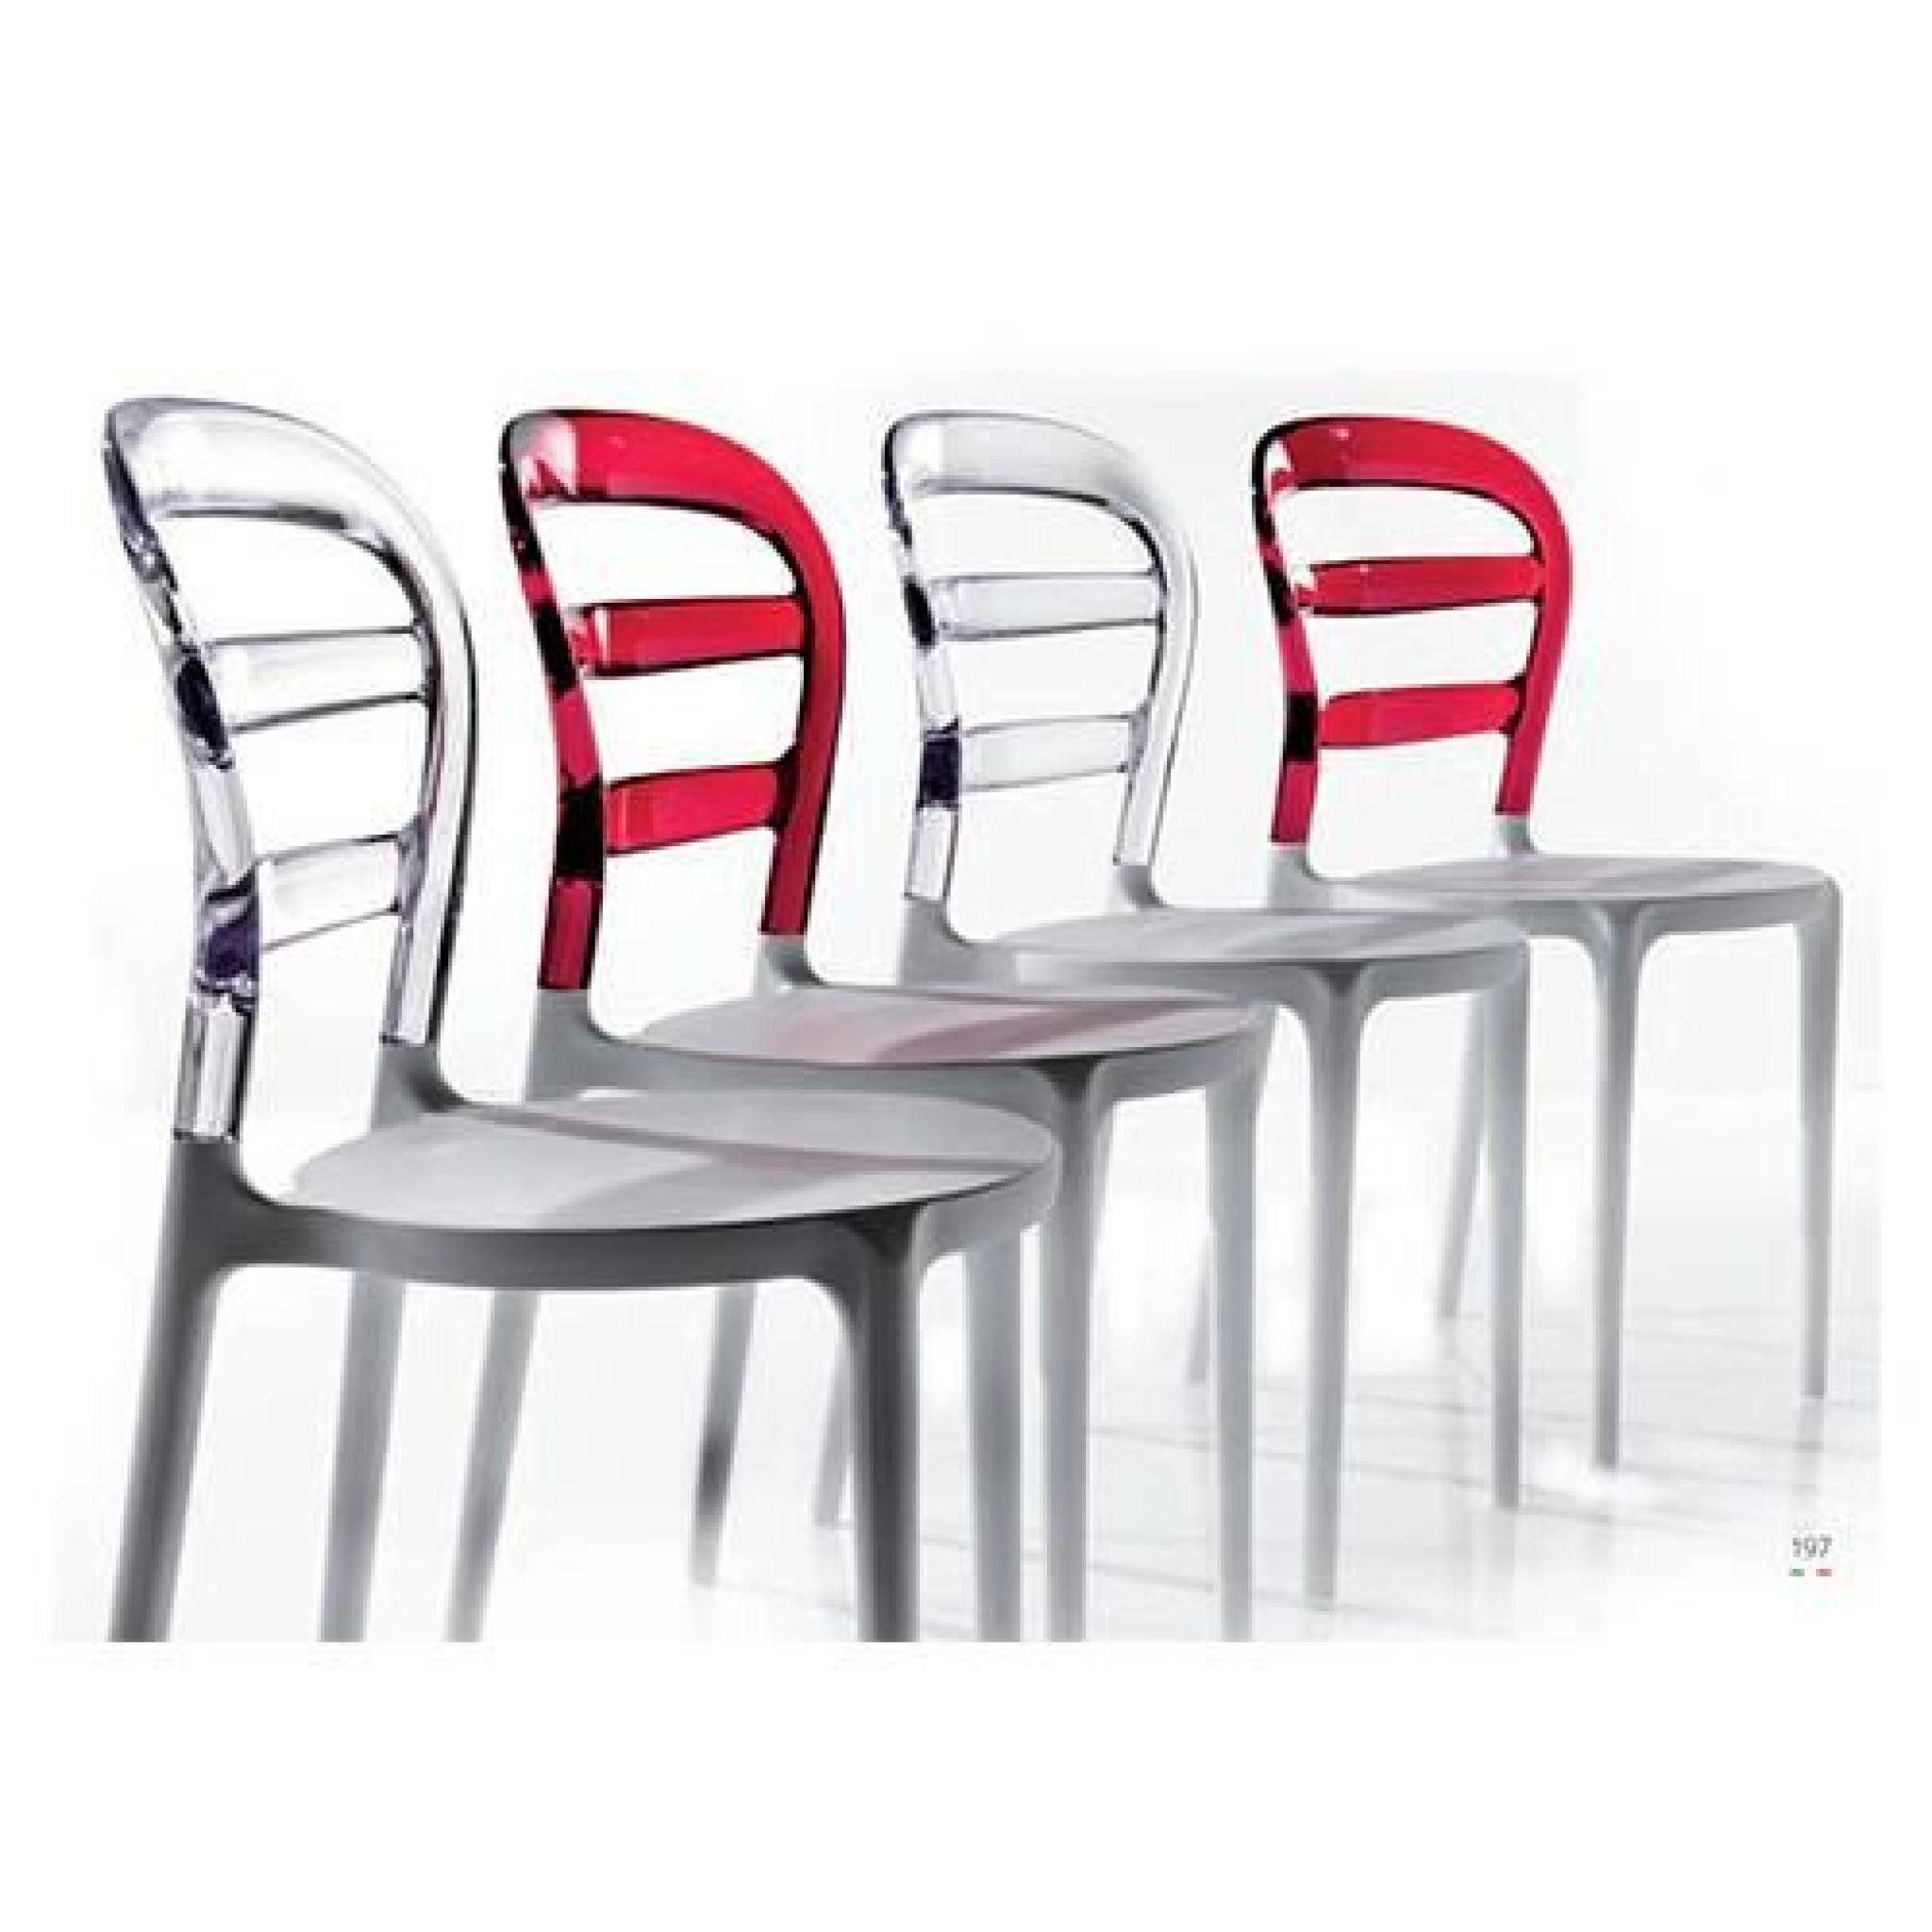 NEO - Chaise en polypropylene rouge transparent pas cher